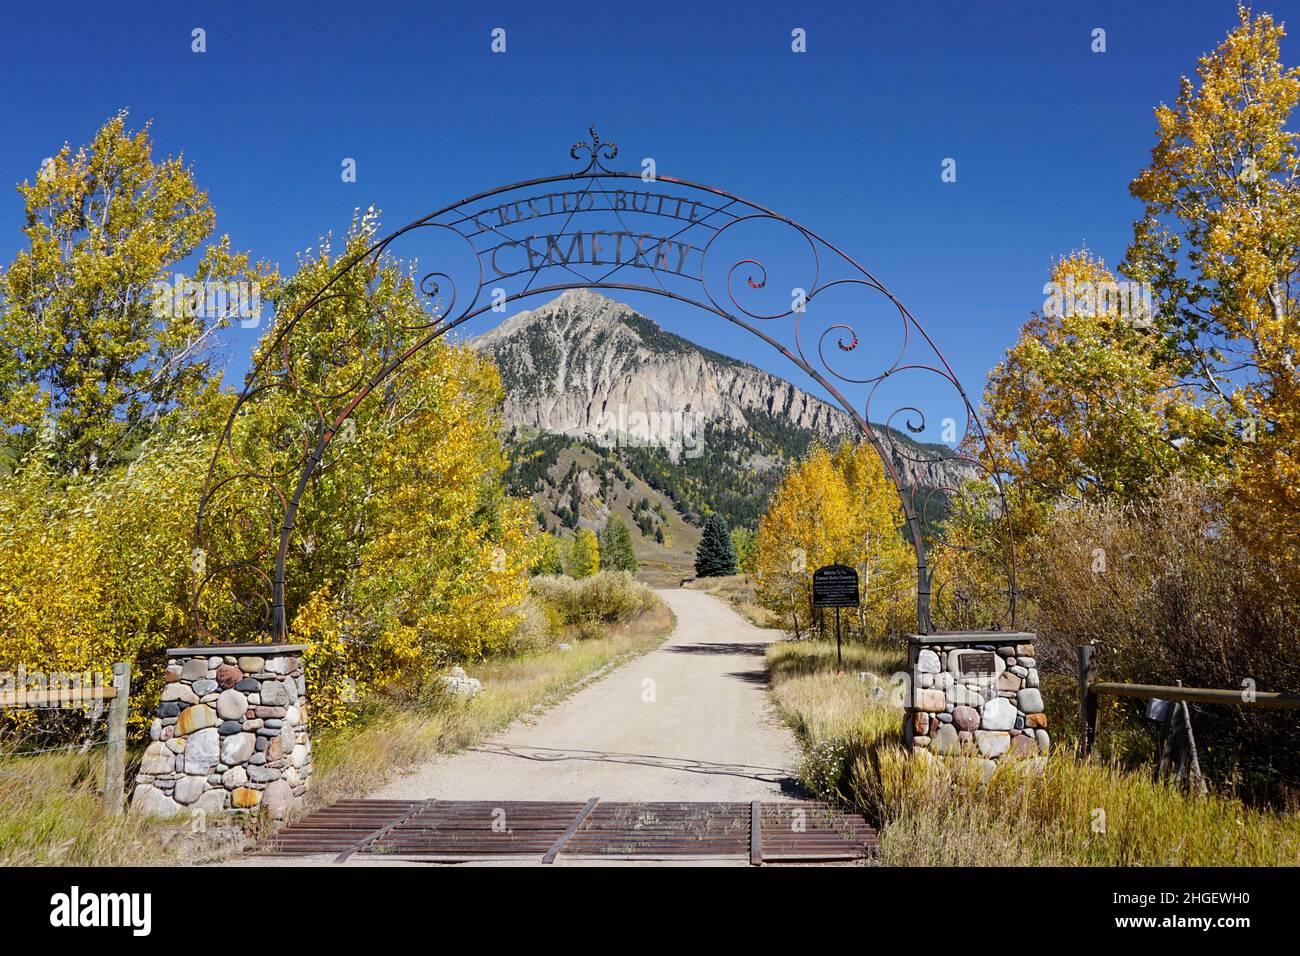 Crested Butte, Colorado, Estados Unidos 25 de septiembre de 2021: Puerta para el cementerio Crested Butte Foto de stock